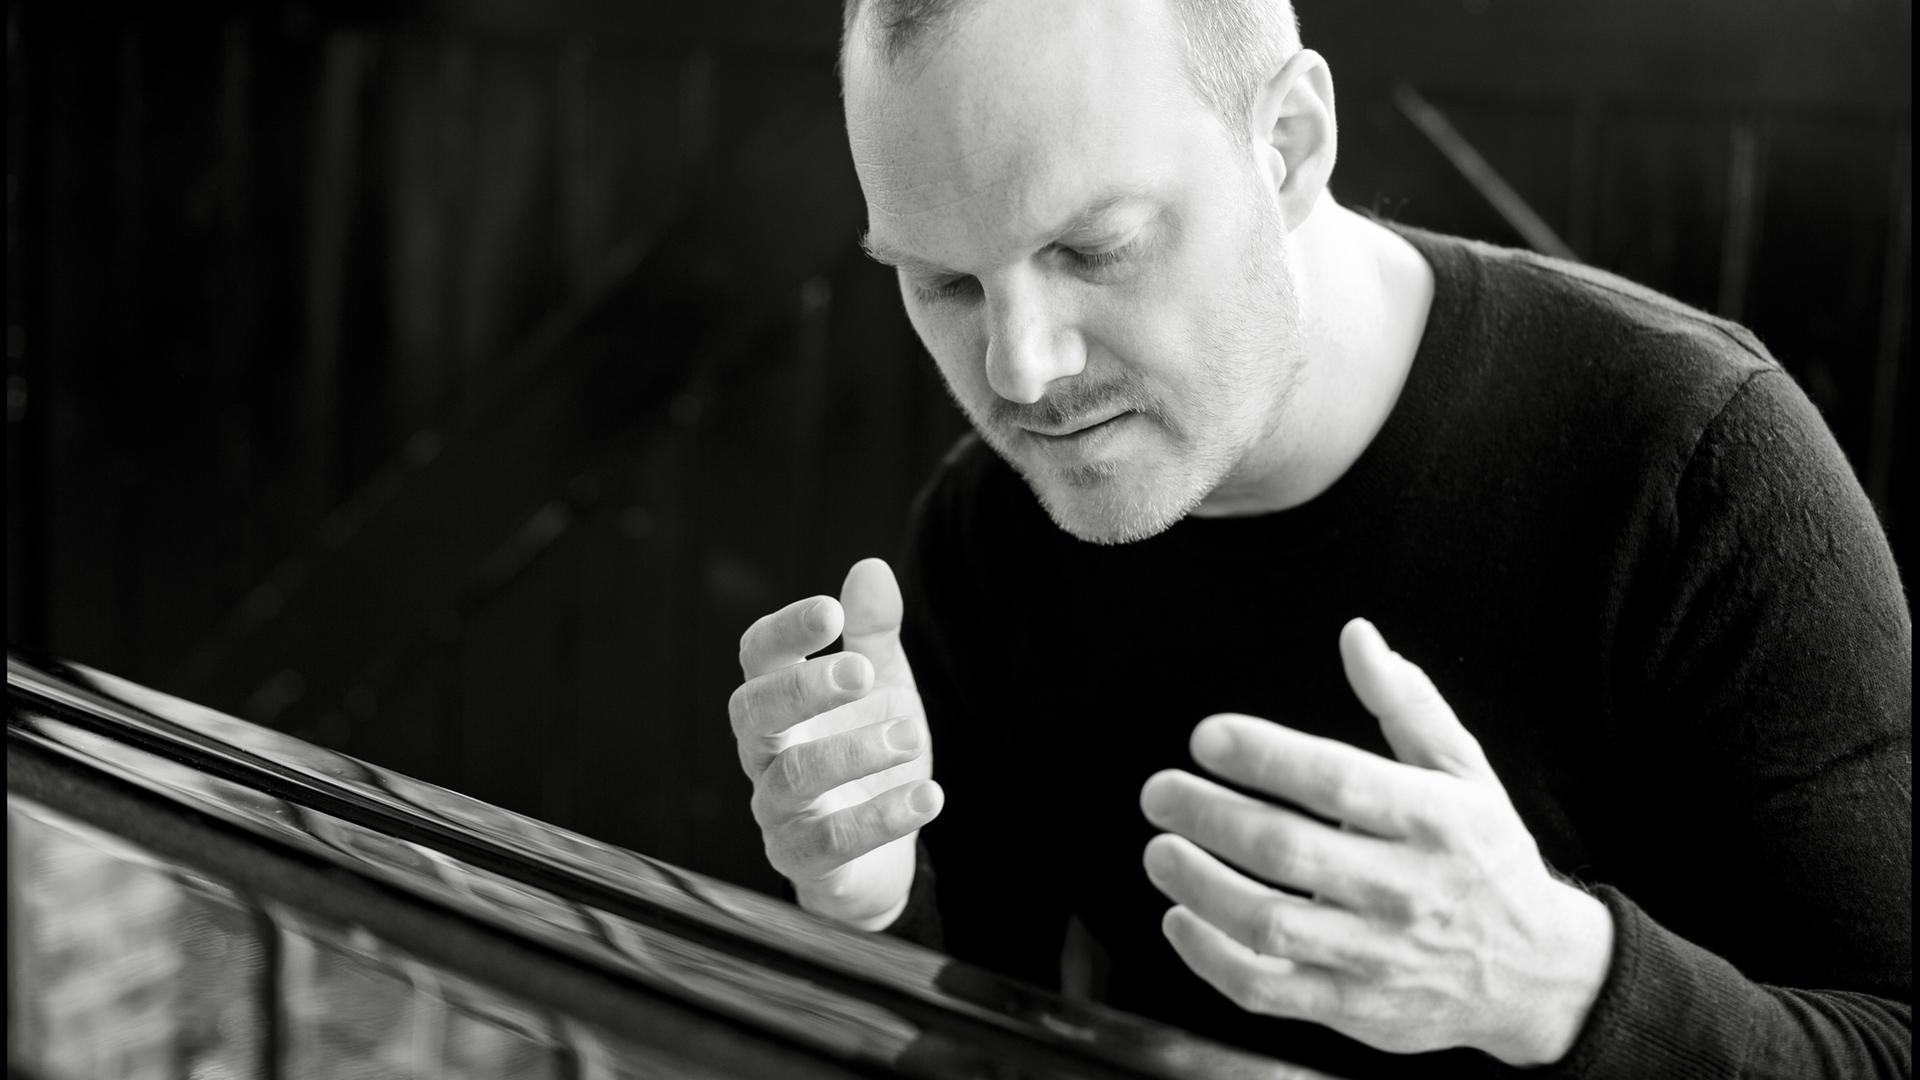 Der Pianist Lars Vogt sitzt am Flügel und hat beide Hände in einer Musikpause erhoben und genießt den Augenblick mit geschlossenen Augen.